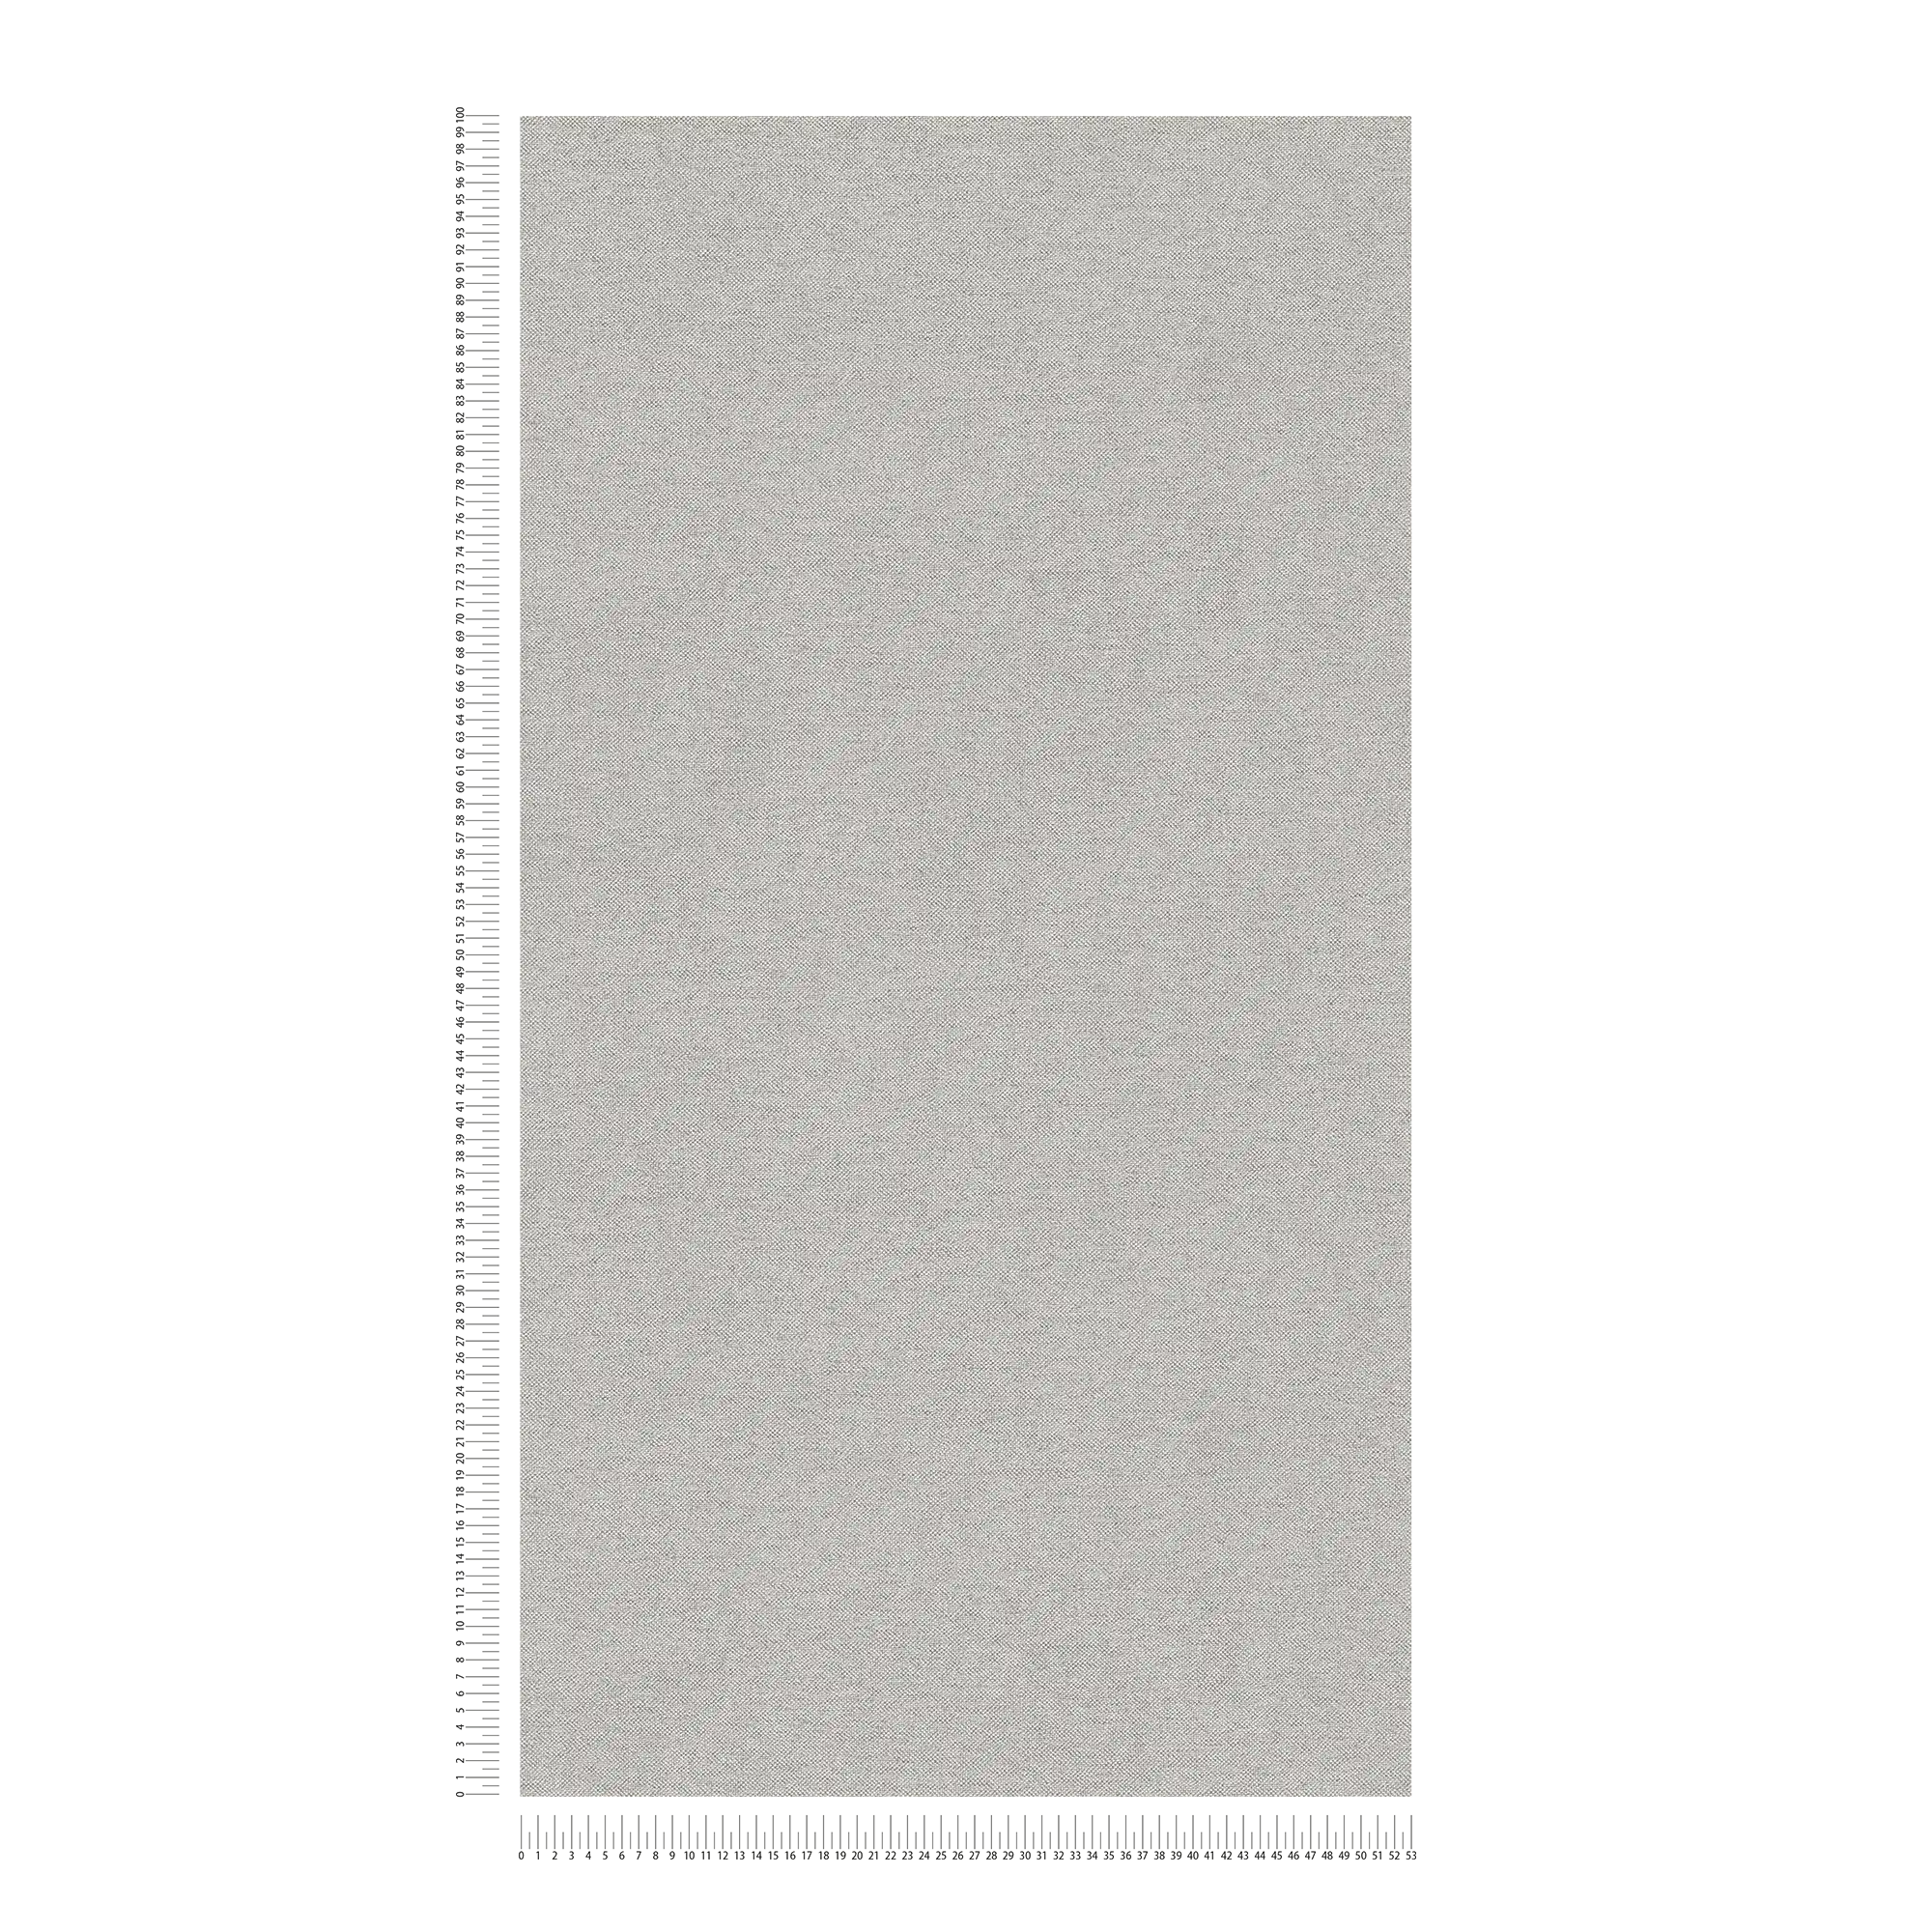             Papier peint uni gris avec structure textile & aspect lin dans le style maison de campagne
        